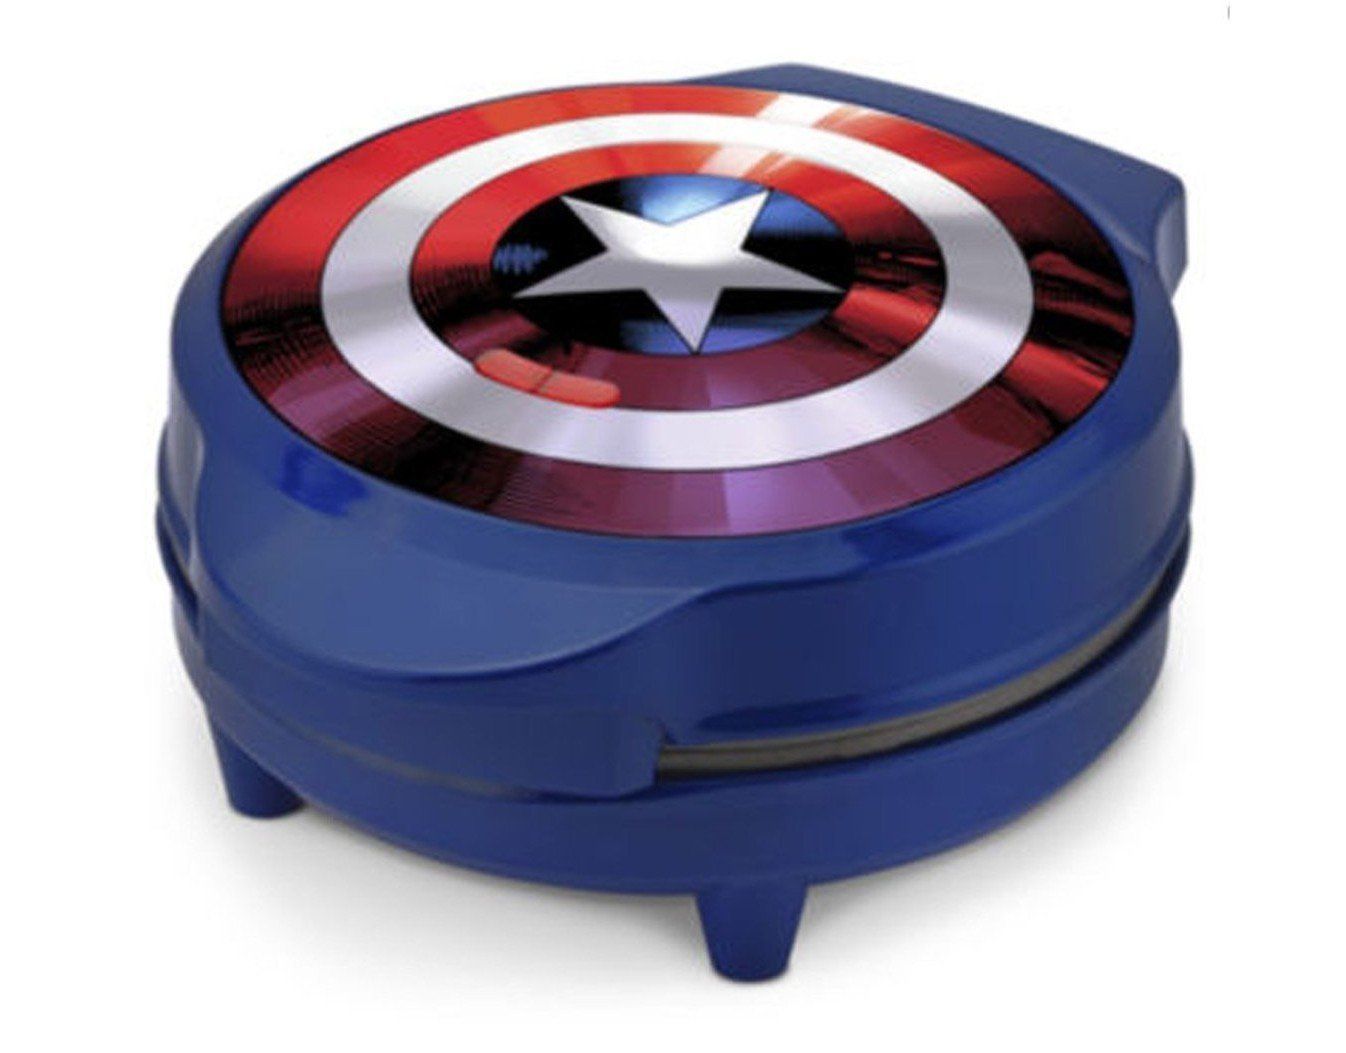 Avec ce gaufrier vous allez pouvoir manger le bouclier de Captain America